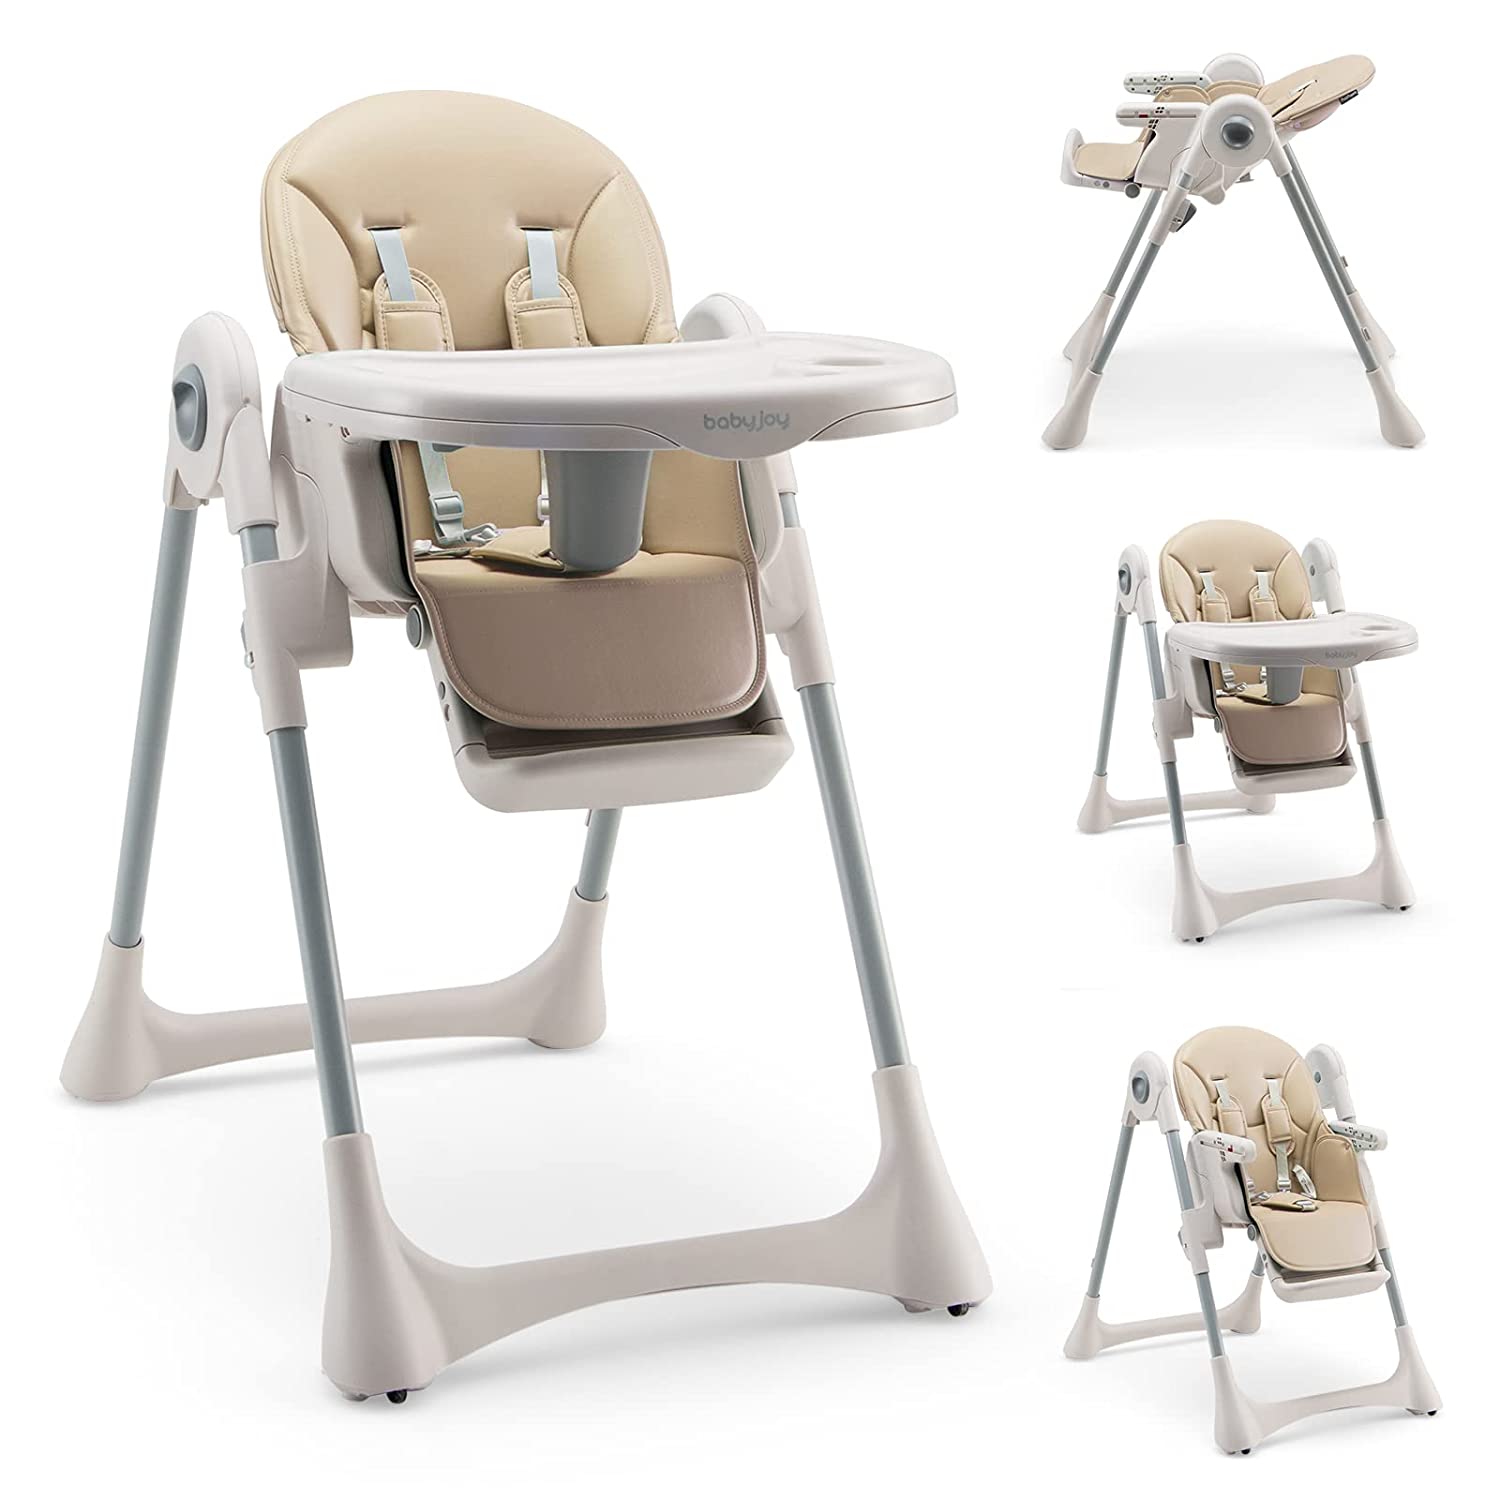 Детский стульчик-трансформер для кормления Baby Joy, бежевый цена и фото